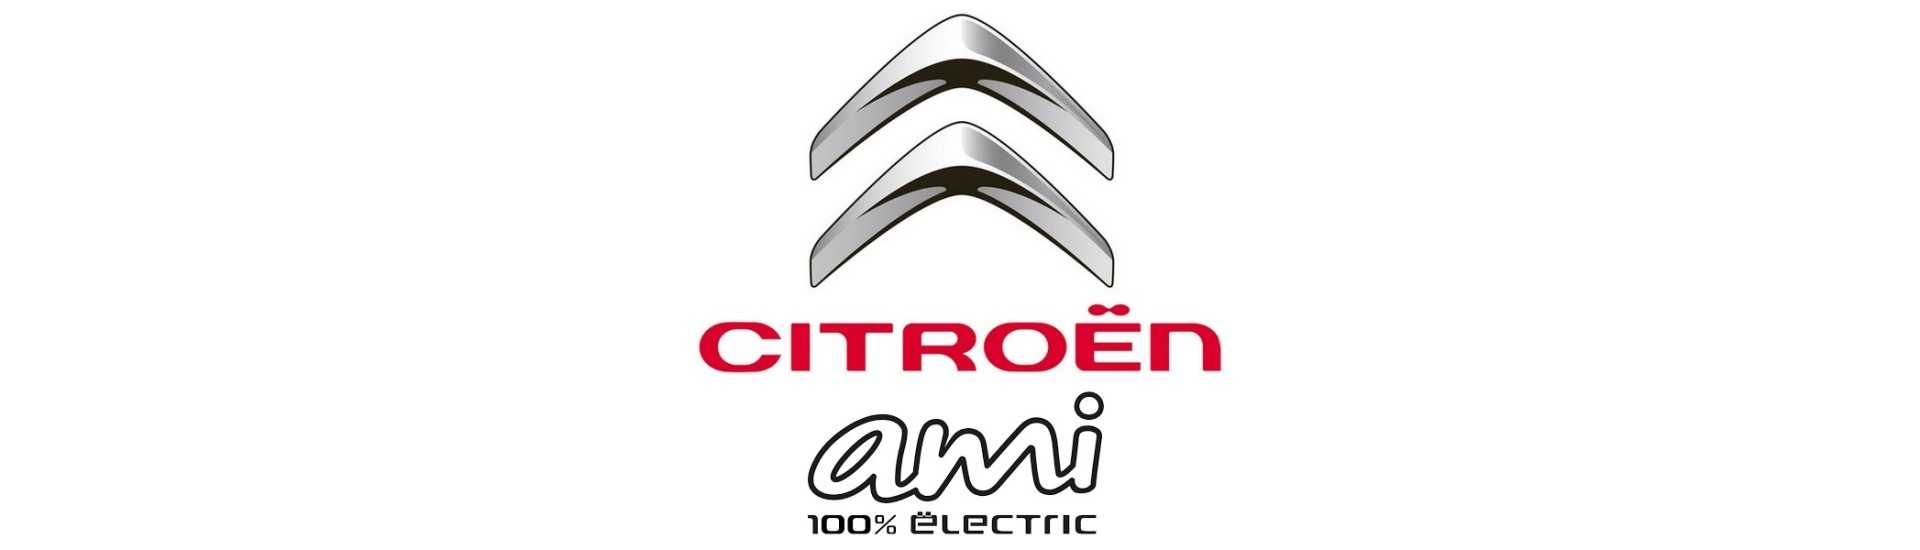 Bloco silencioso ao melhor preço para o carro sem licença Citroën Ami